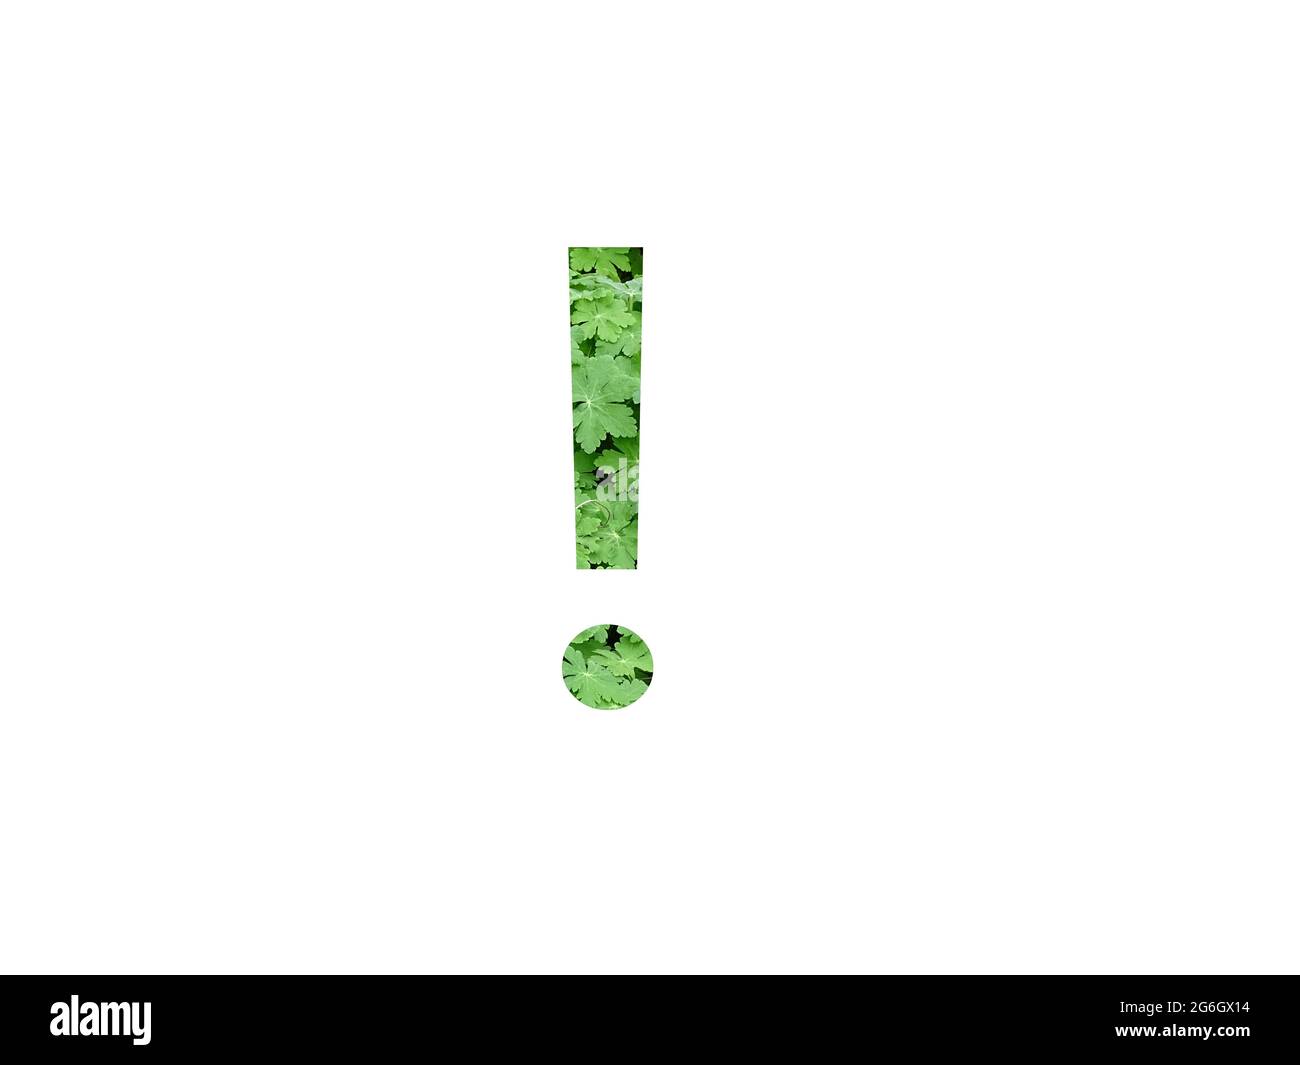 point d'exclamation de l'alphabet avec une feuille verte de géranium, isolée sur fond blanc Banque D'Images